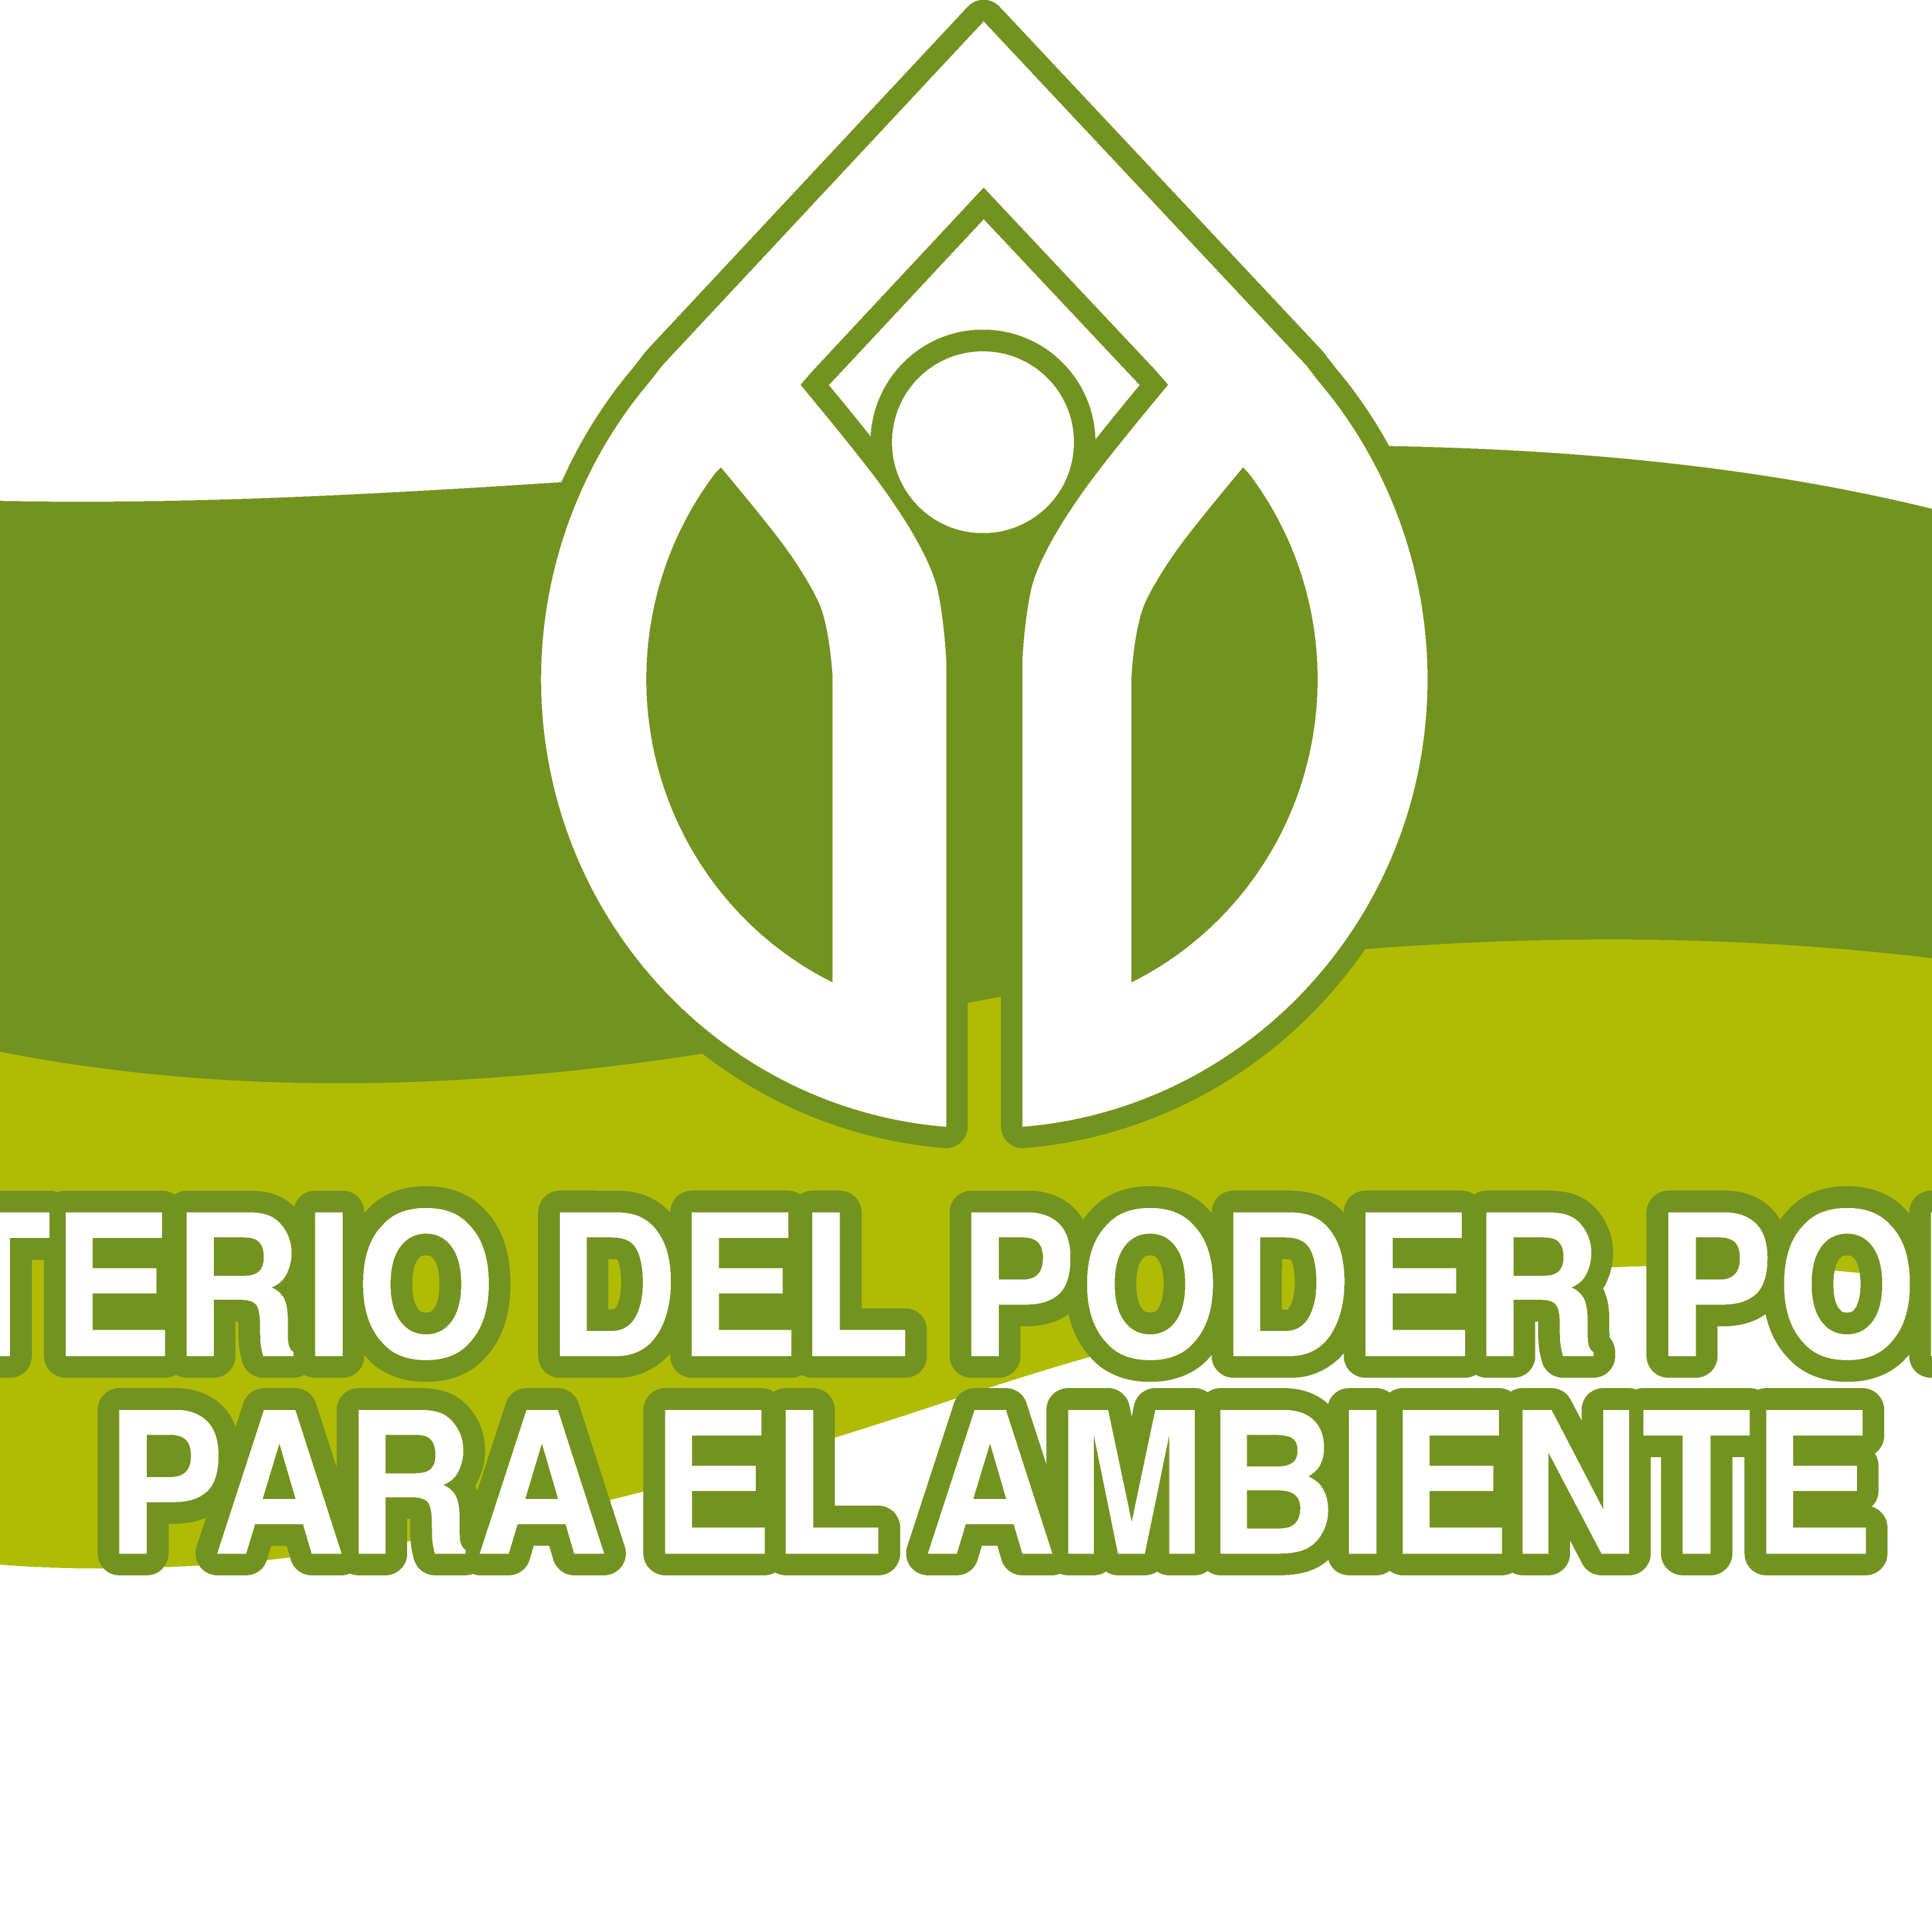 Ministerio P.P.P. Del Ambiente.. Ubicados en la Av. Marginal del Torbes, al lado del Parque Andres MIranda, San Cristobal, Edo. Tachira